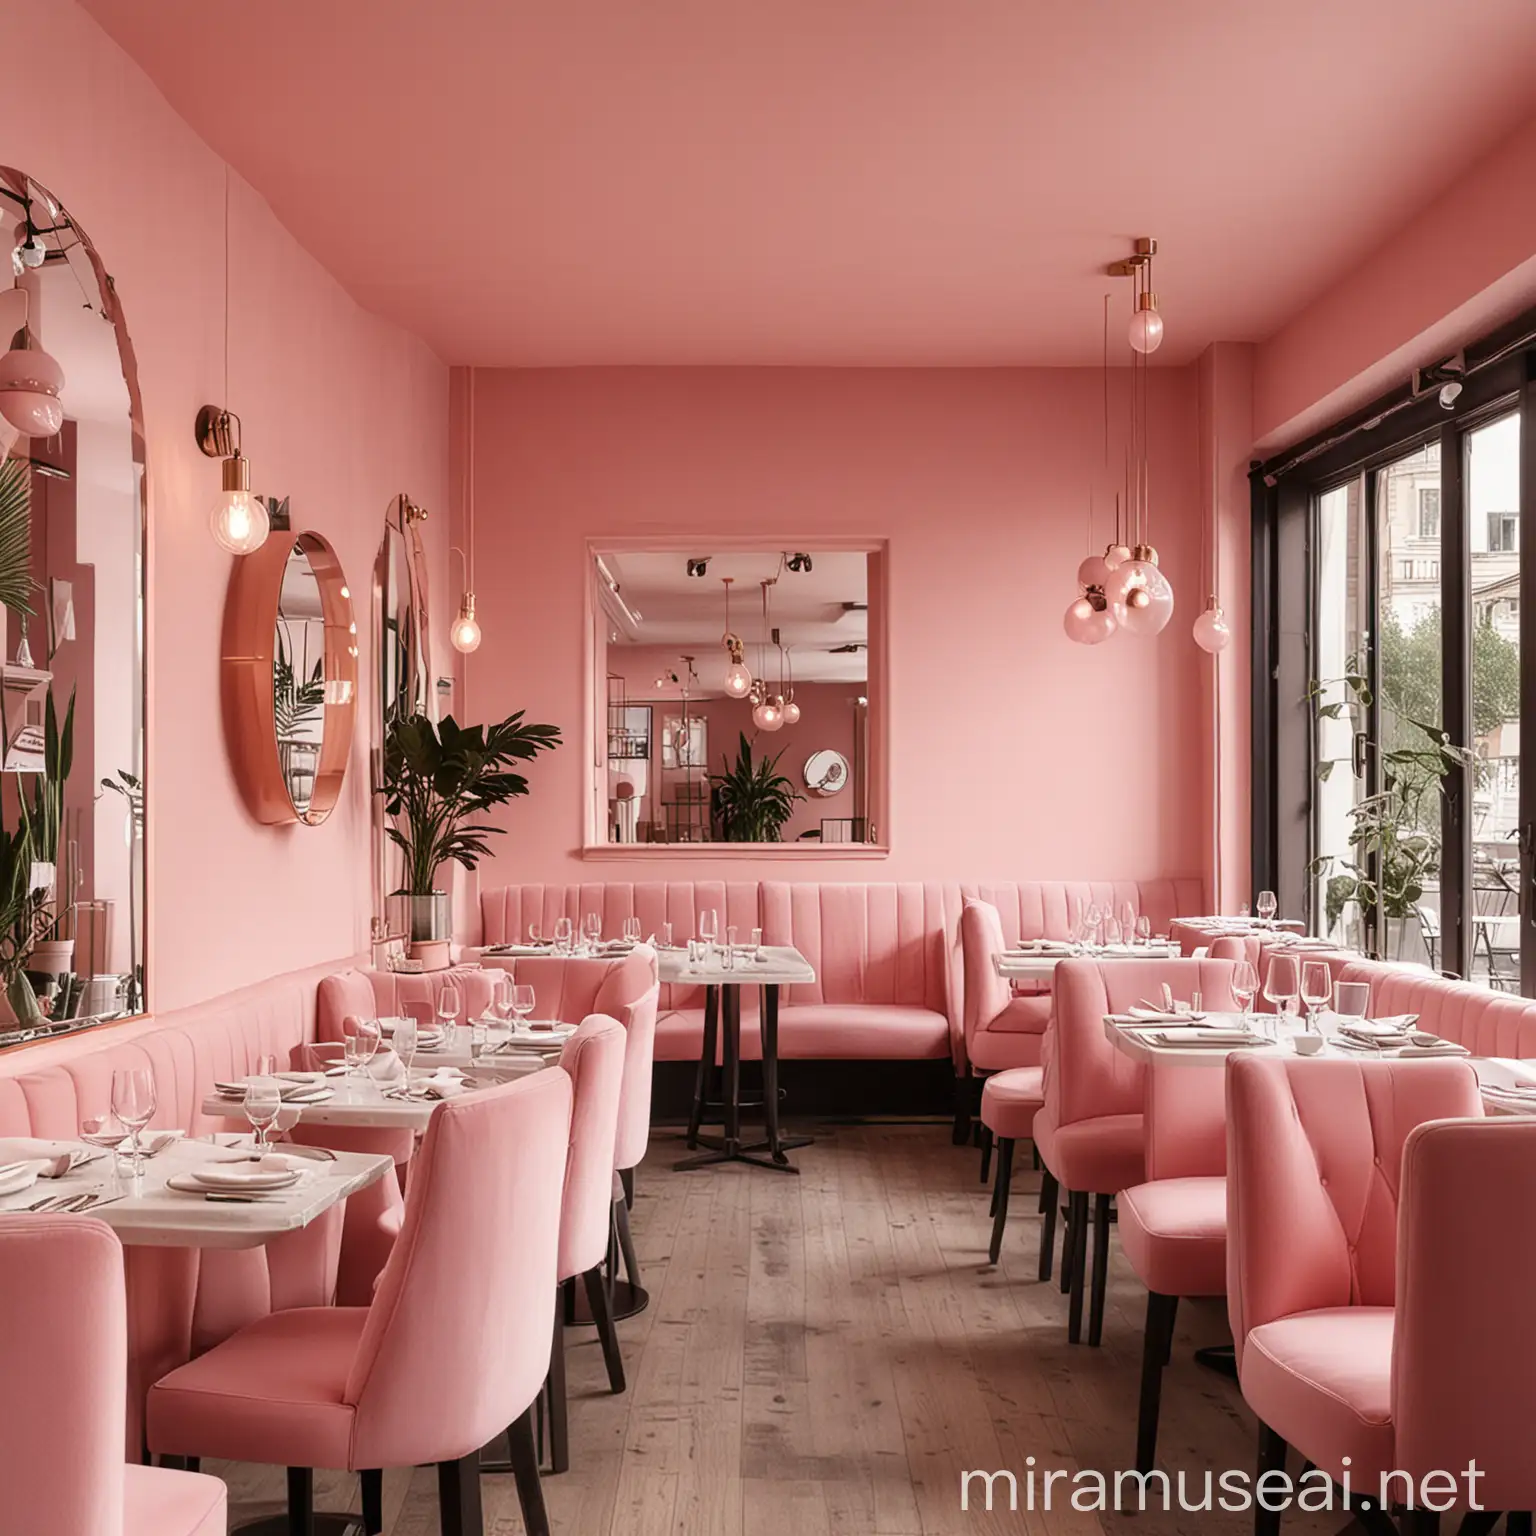 millennial pink in interior restaurant shot